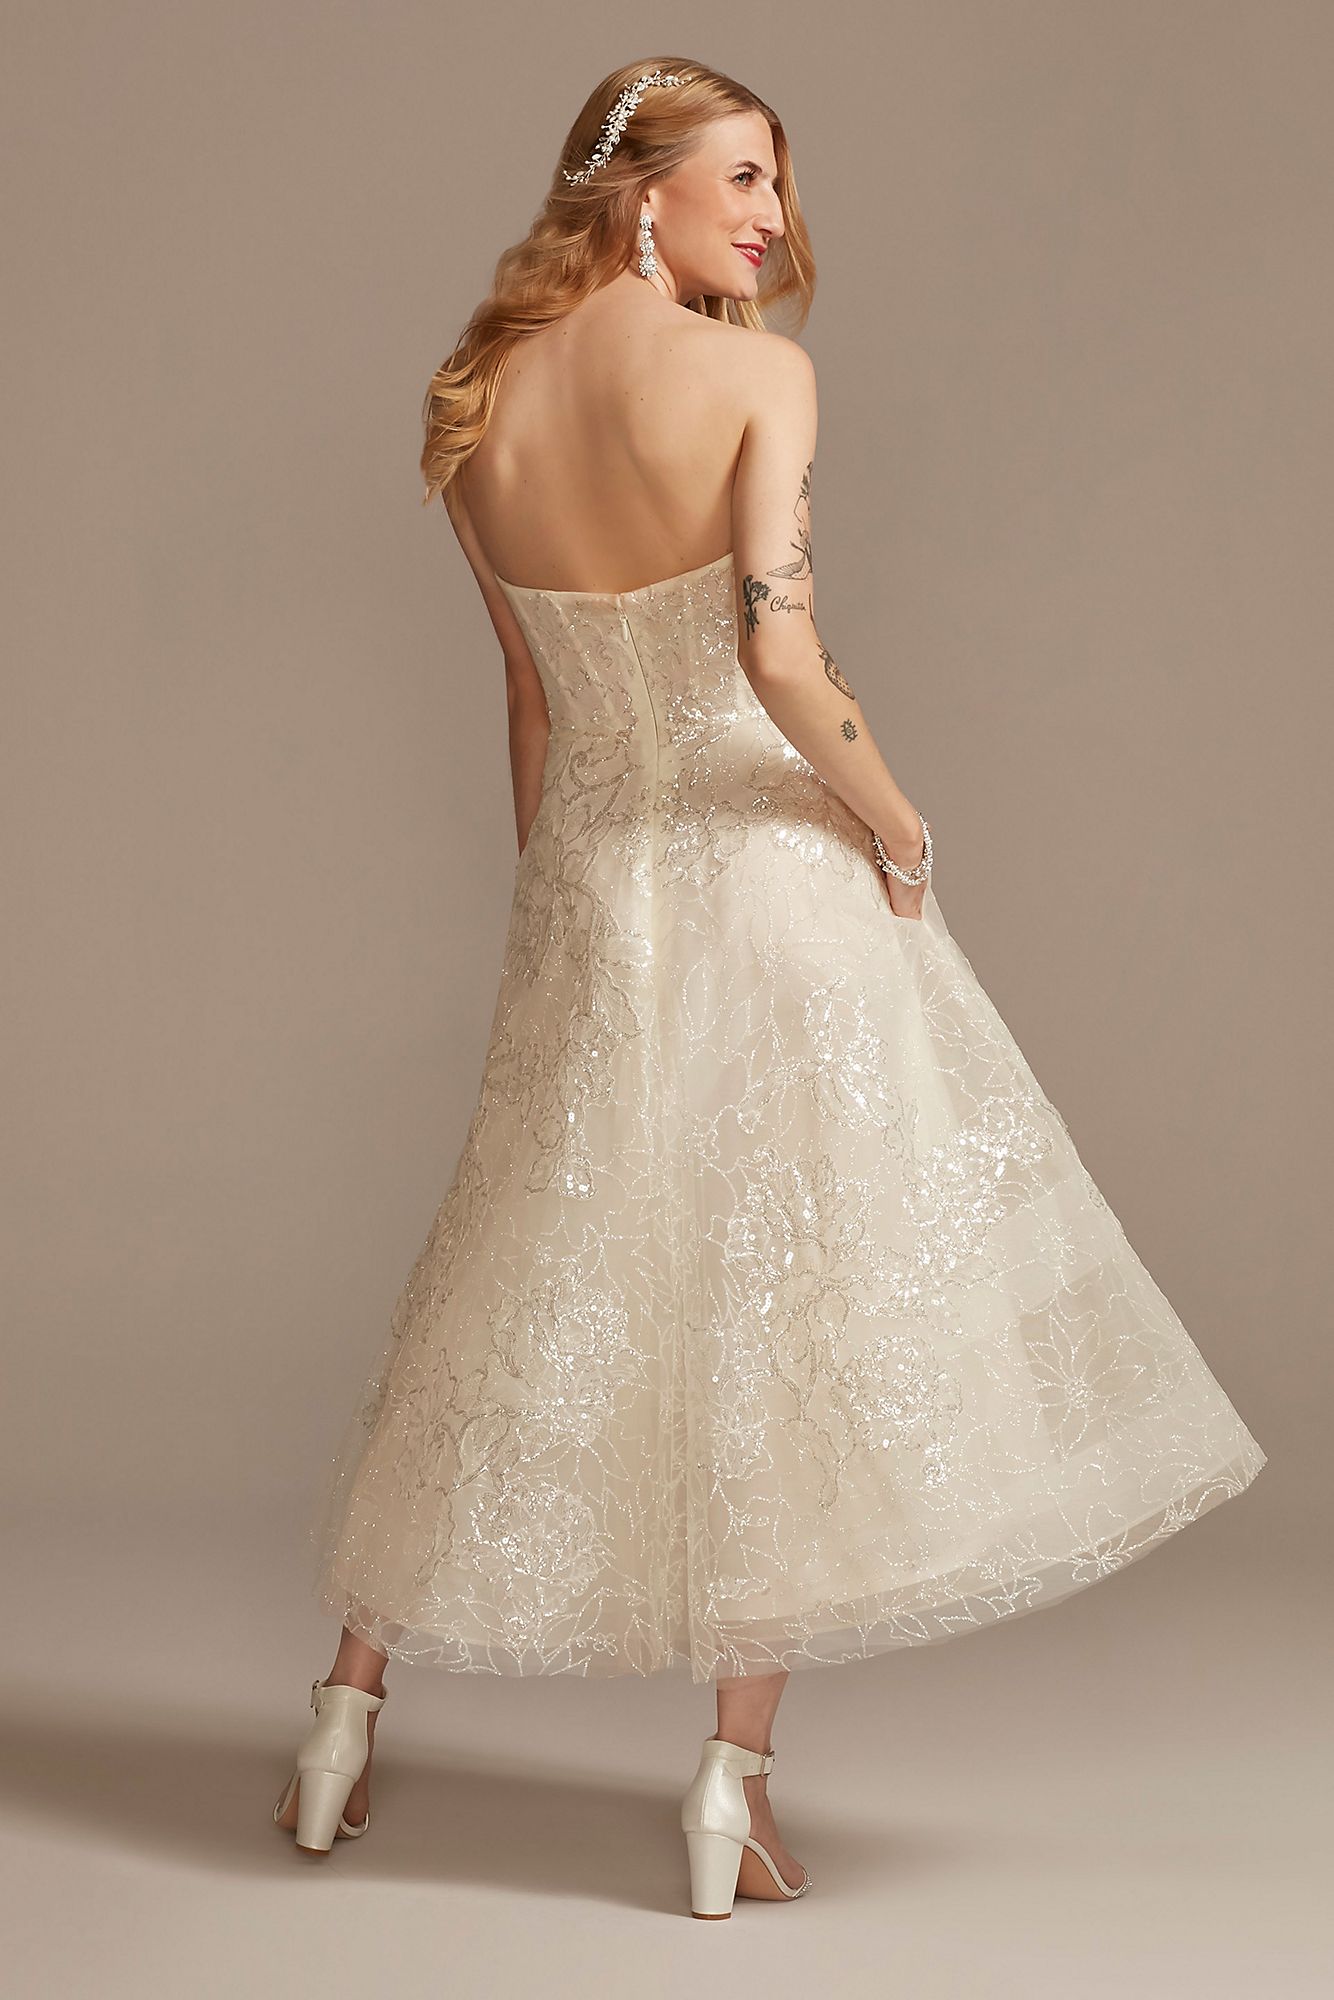 Floral Glitter Tulle Tea-Length Wedding Dress Oleg Cassini CWG903